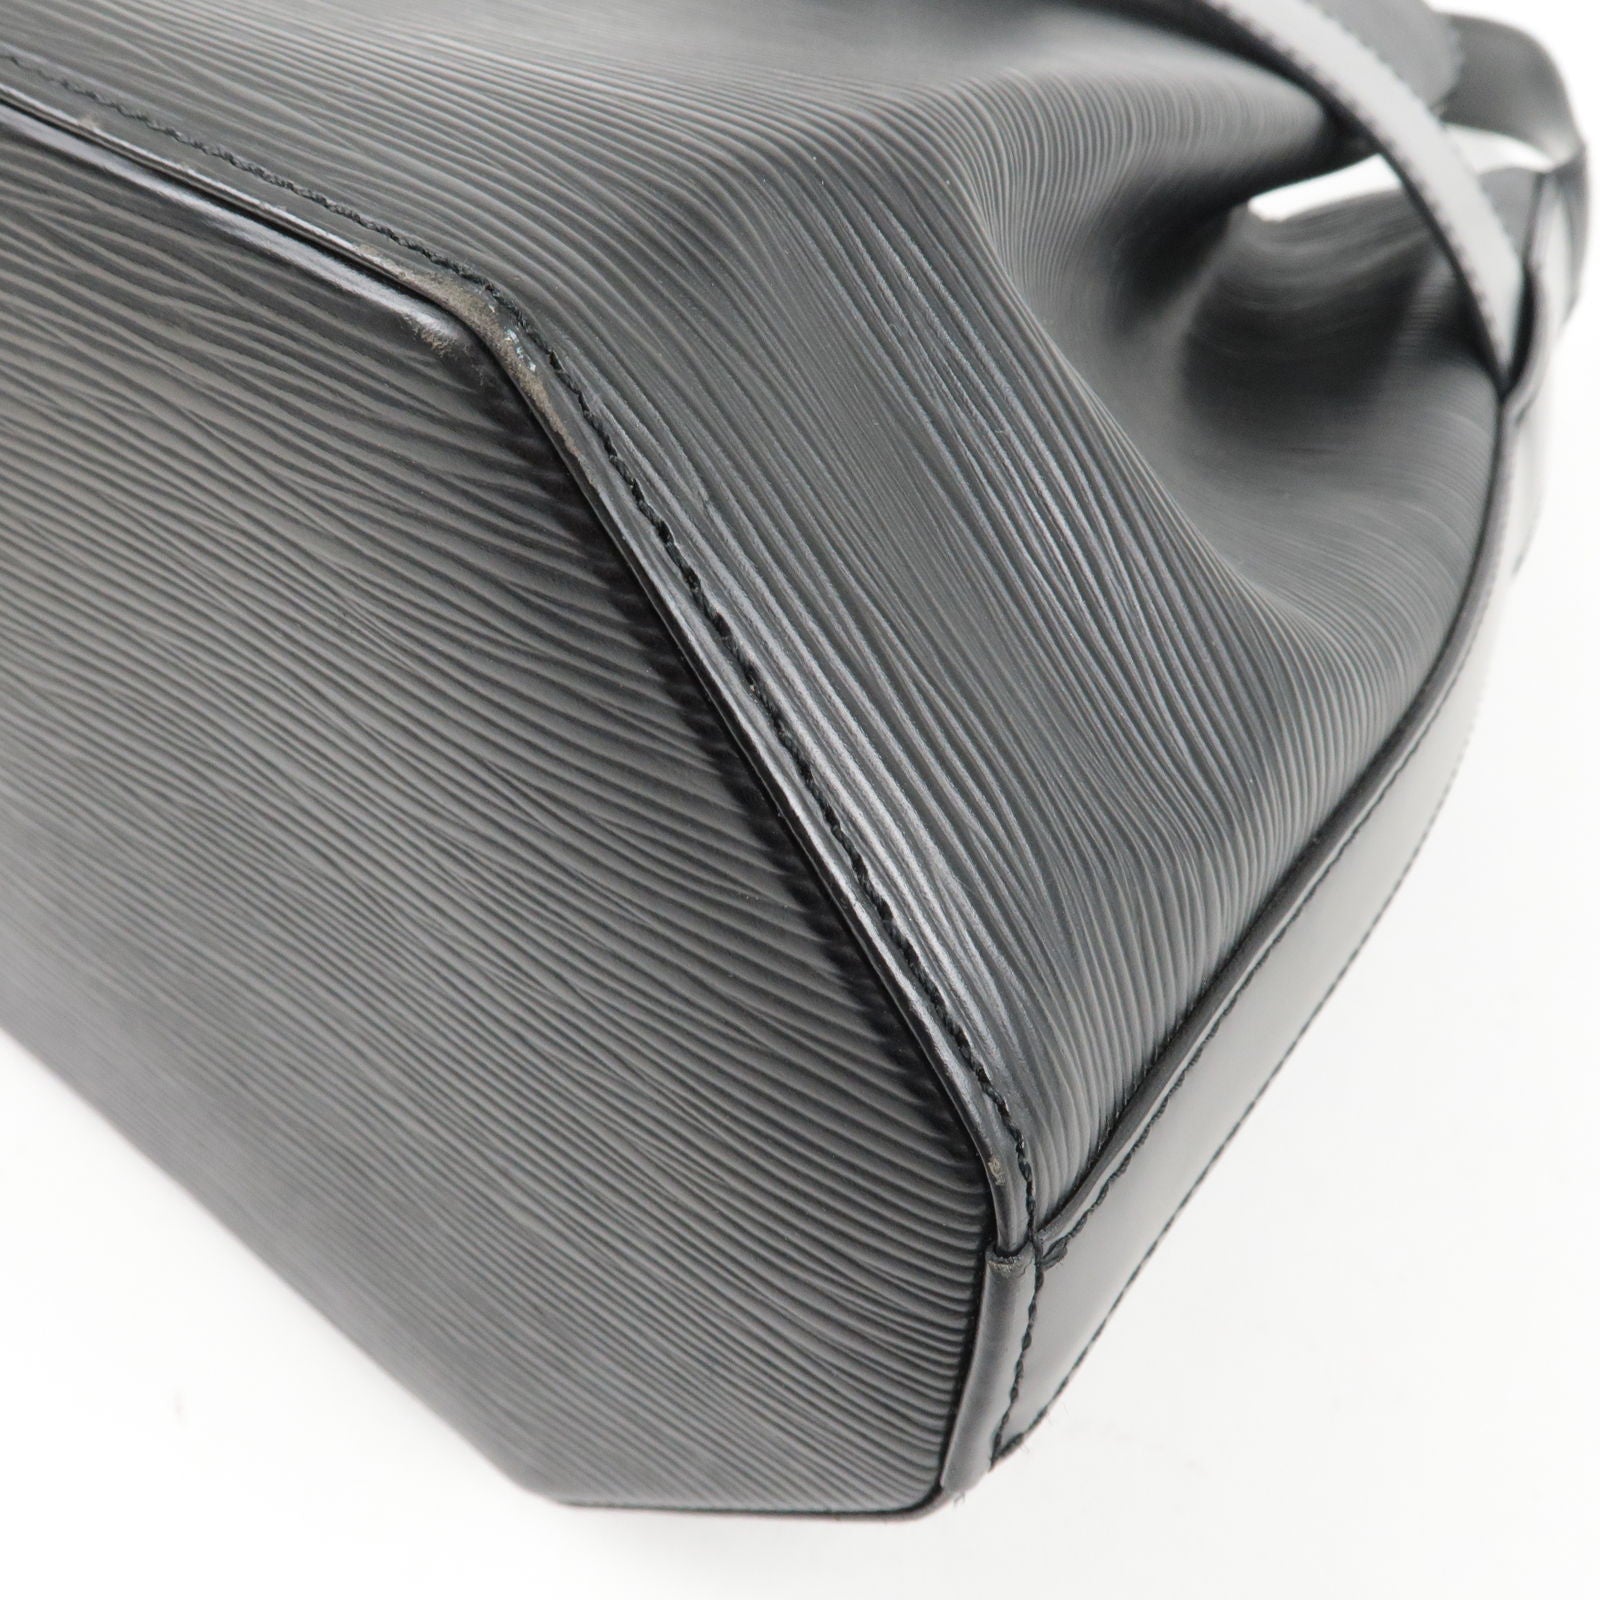 Louis Vuitton - Sac d'Epaule PM Epi Leather Noir